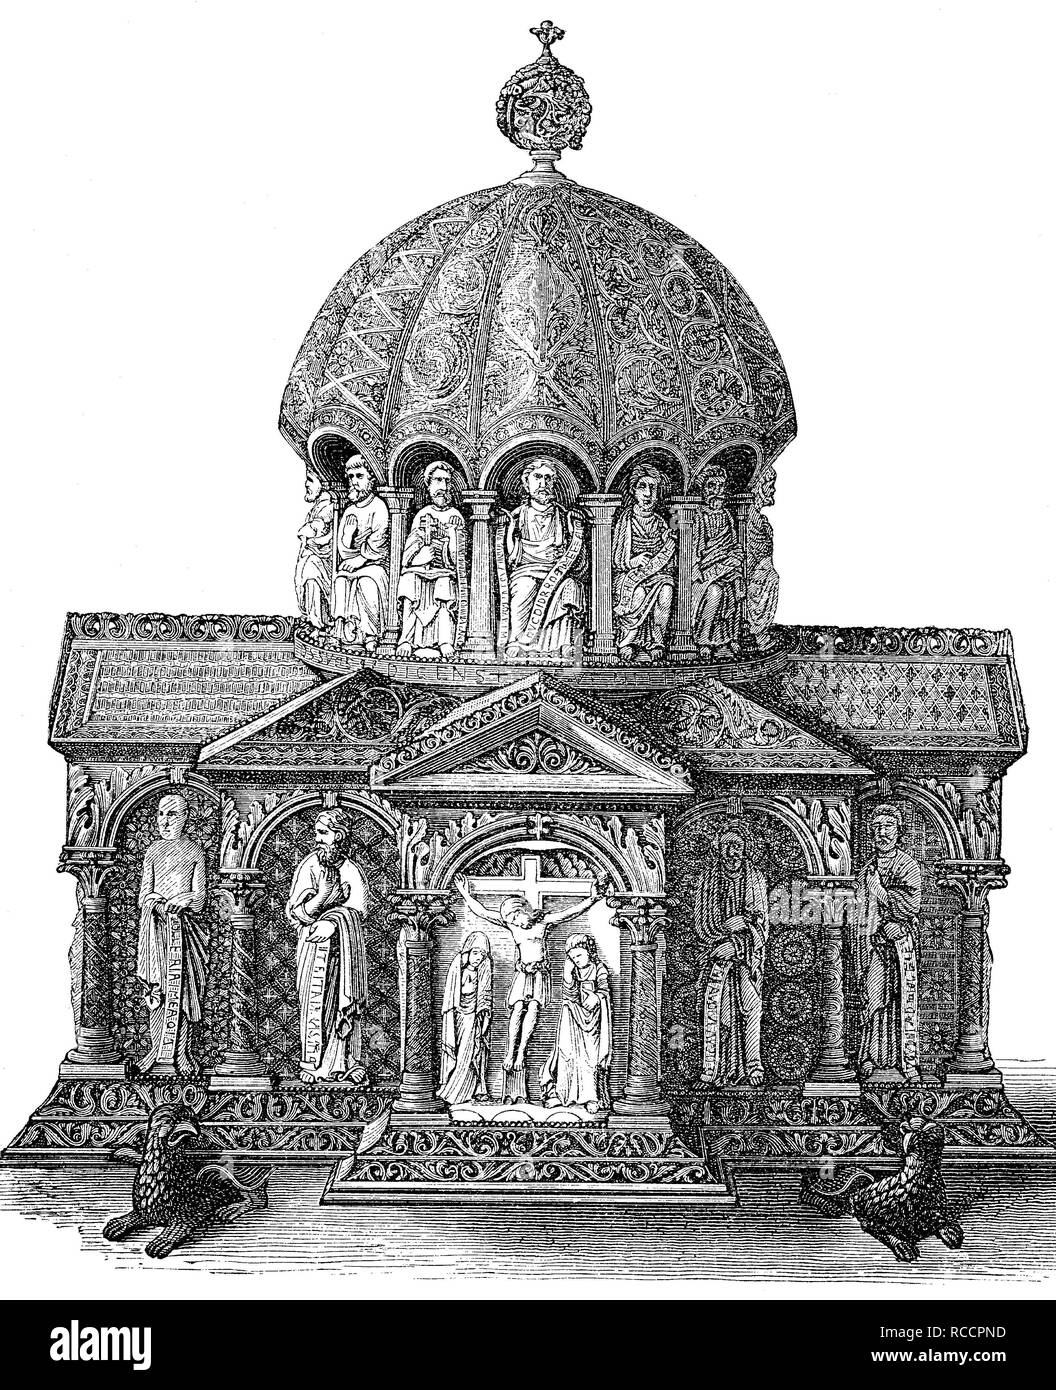 Perle de la Guelph Treasure, trésor des reliques de la cathédrale de Brunswick, historique gravure sur bois, vers 1870 Banque D'Images